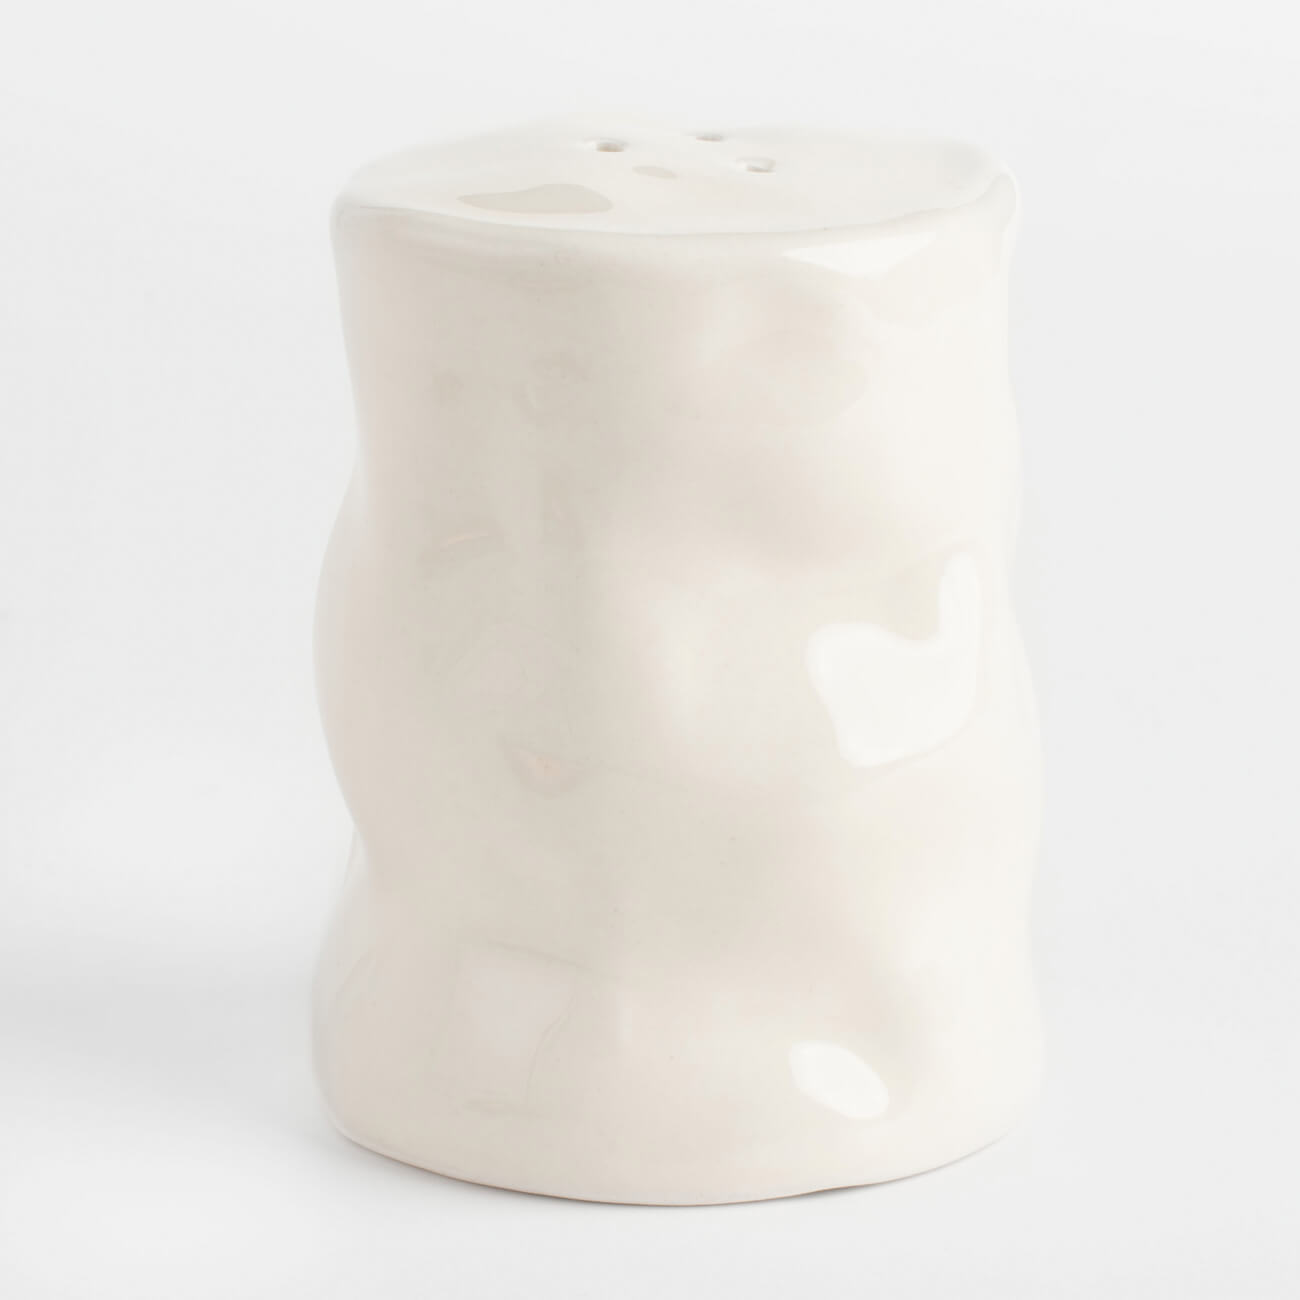 блюдо декоративное 17 см керамика молочное мятый эффект crumple Емкость для соли или перца, 7 см, керамика, молочная, Мятый эффект, Crumple